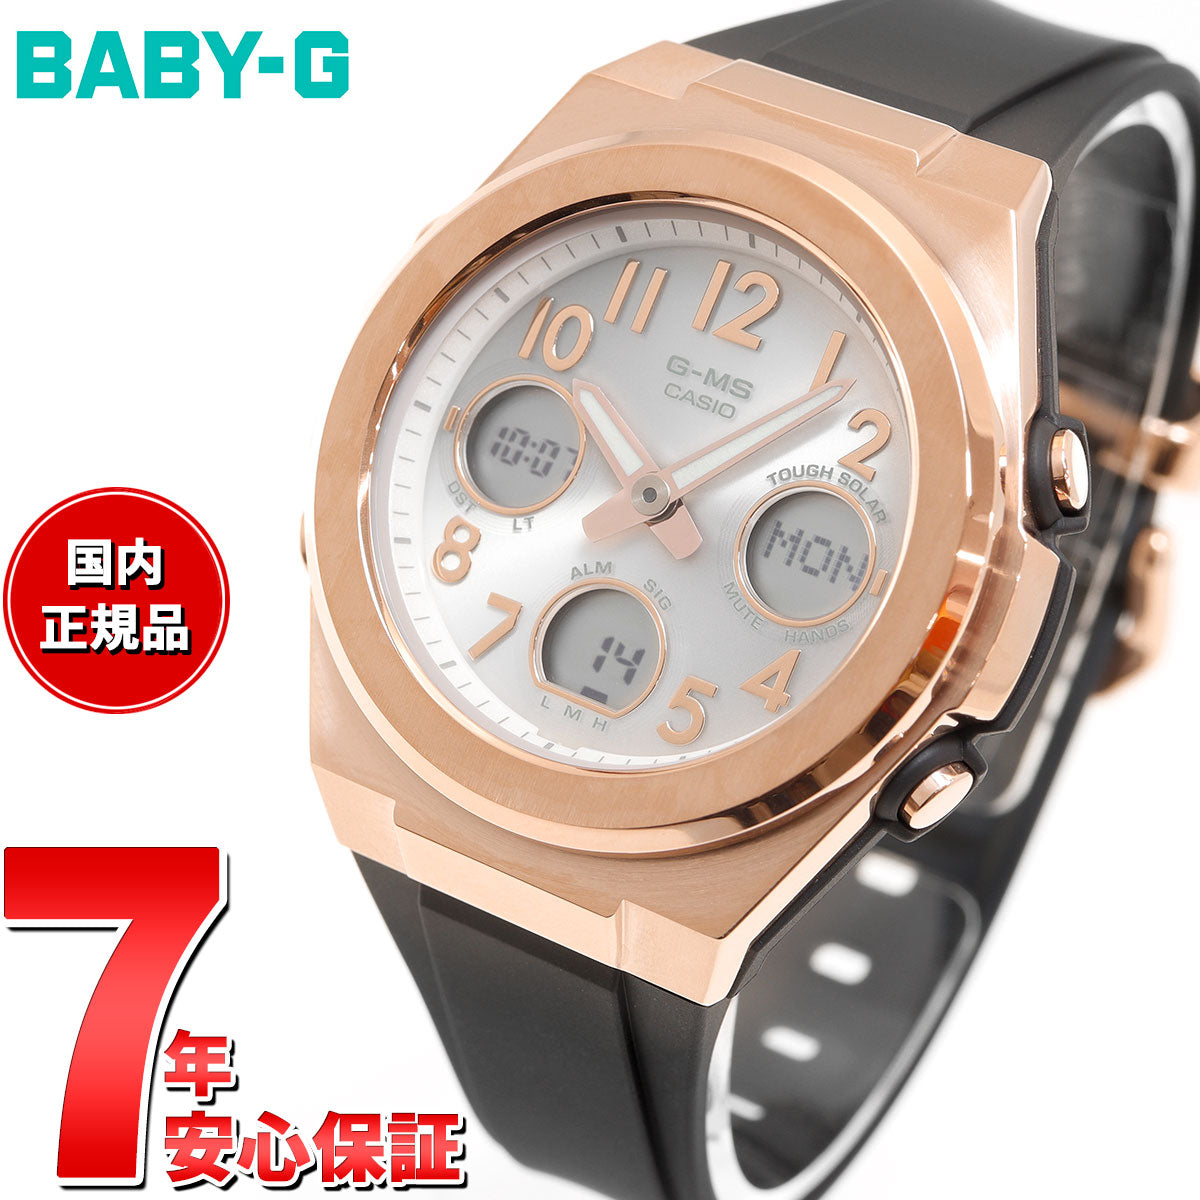 BABY-G カシオ ベビーG レディース G-MS 電波 ソーラー 腕時計 タフ